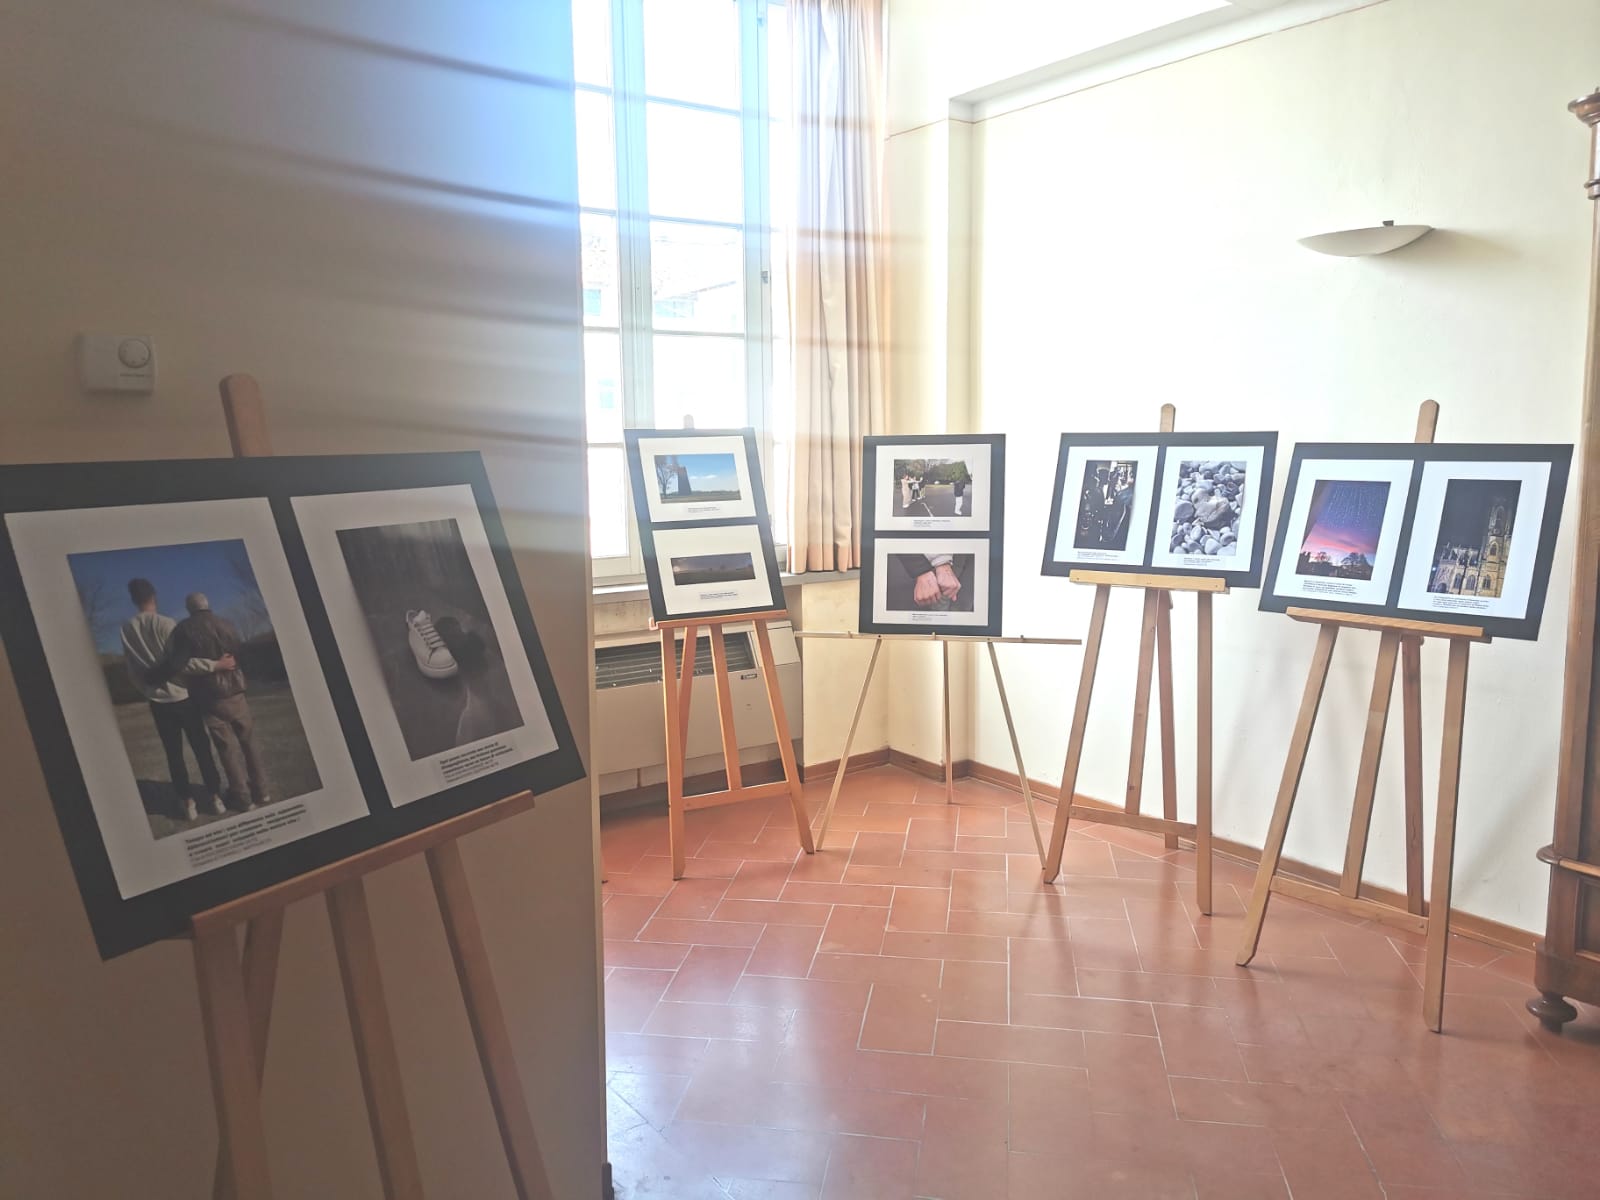 La mostra in municipio (Fonte foto Comune di Fucecchio)